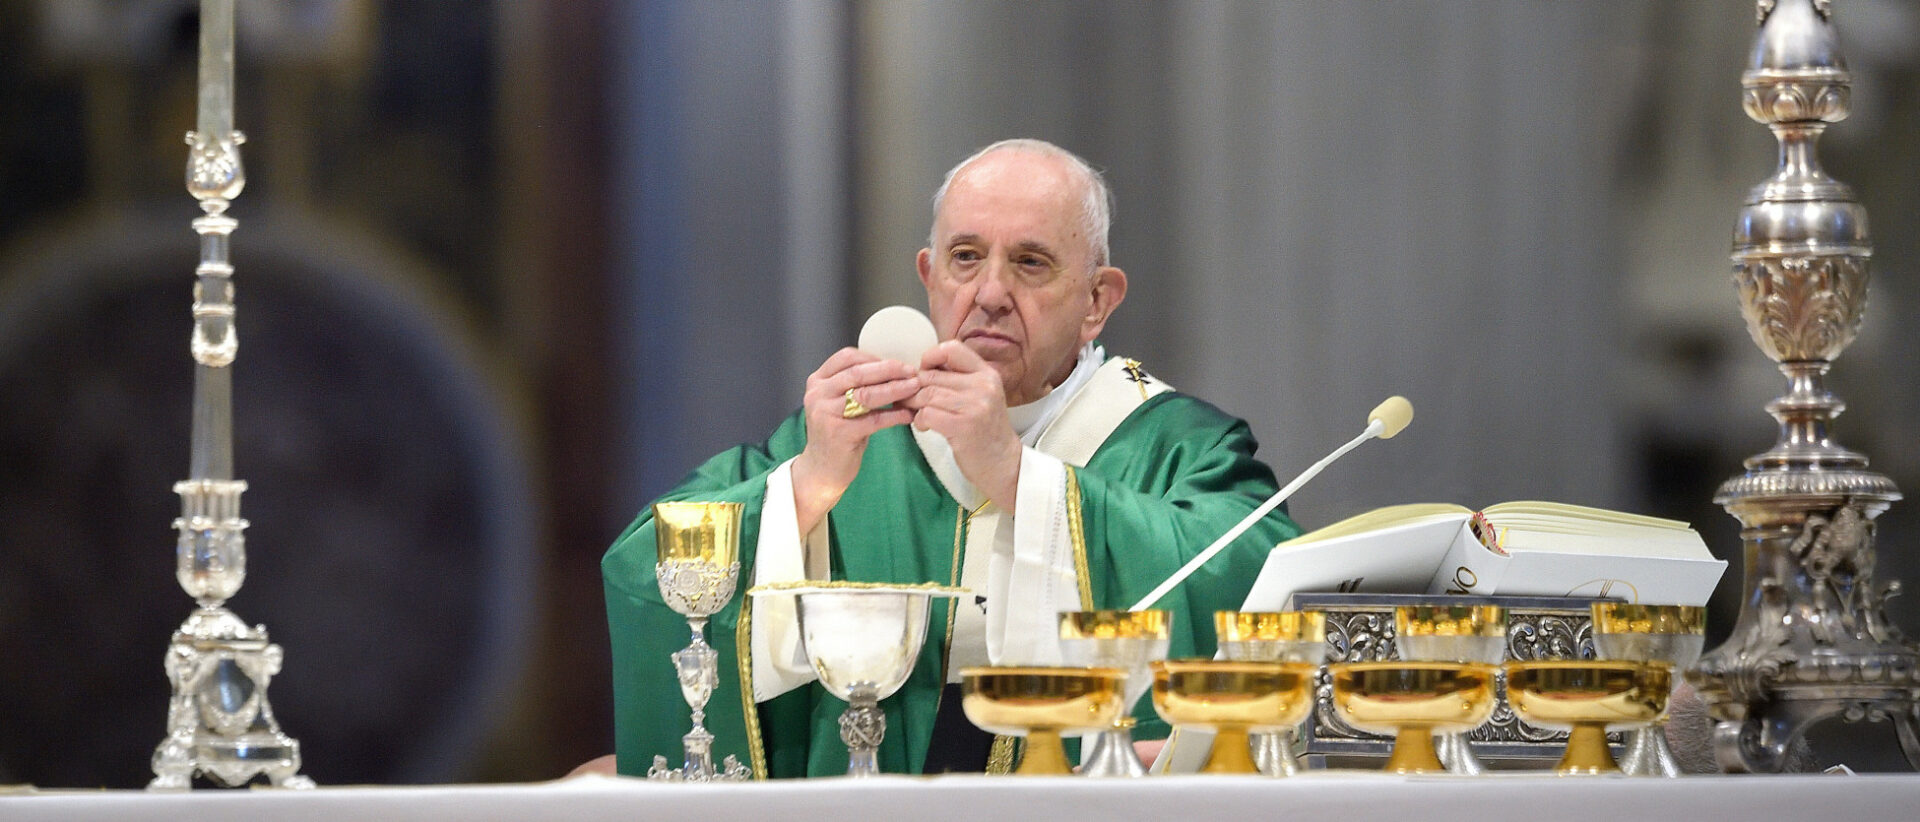 Papst Franziskus feiert einen Gottesdienst im Petersdom anlässlich der Eröffnung der Weltsynode der katholischen Kirche, am 10. Oktober 2021 im Vatikan.